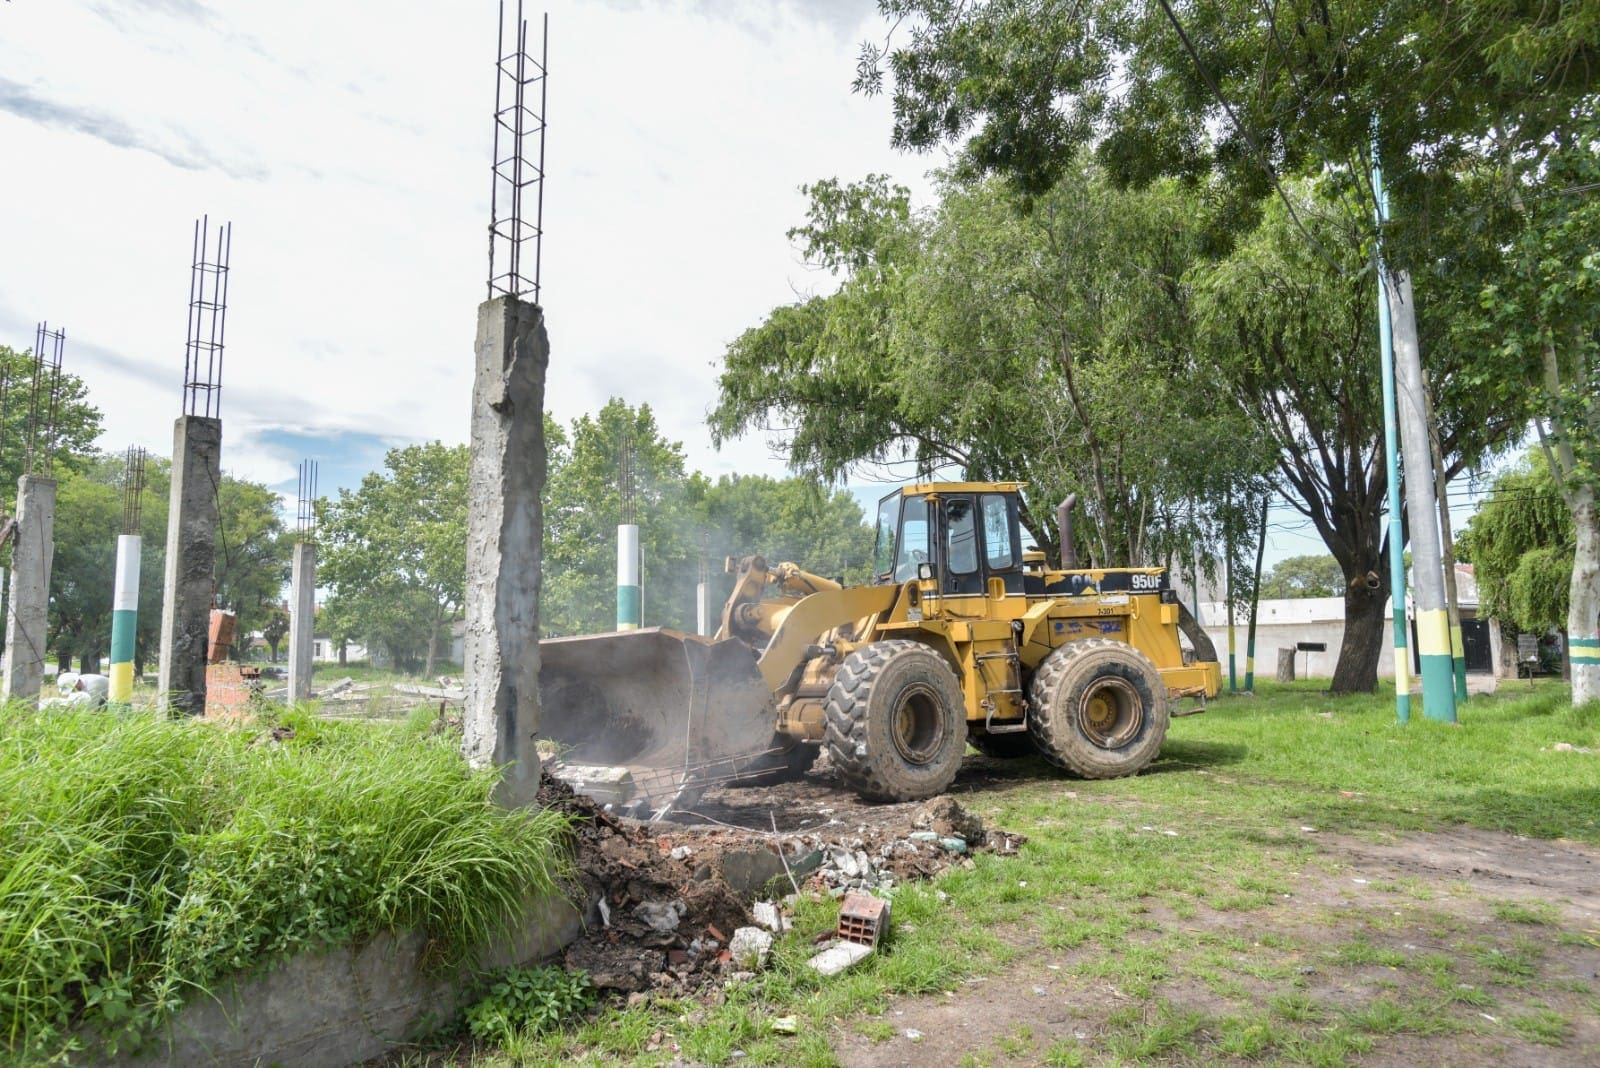 Fotos MGP La Municipalidad demolio una construccion abandonada y construira un playon deportivo